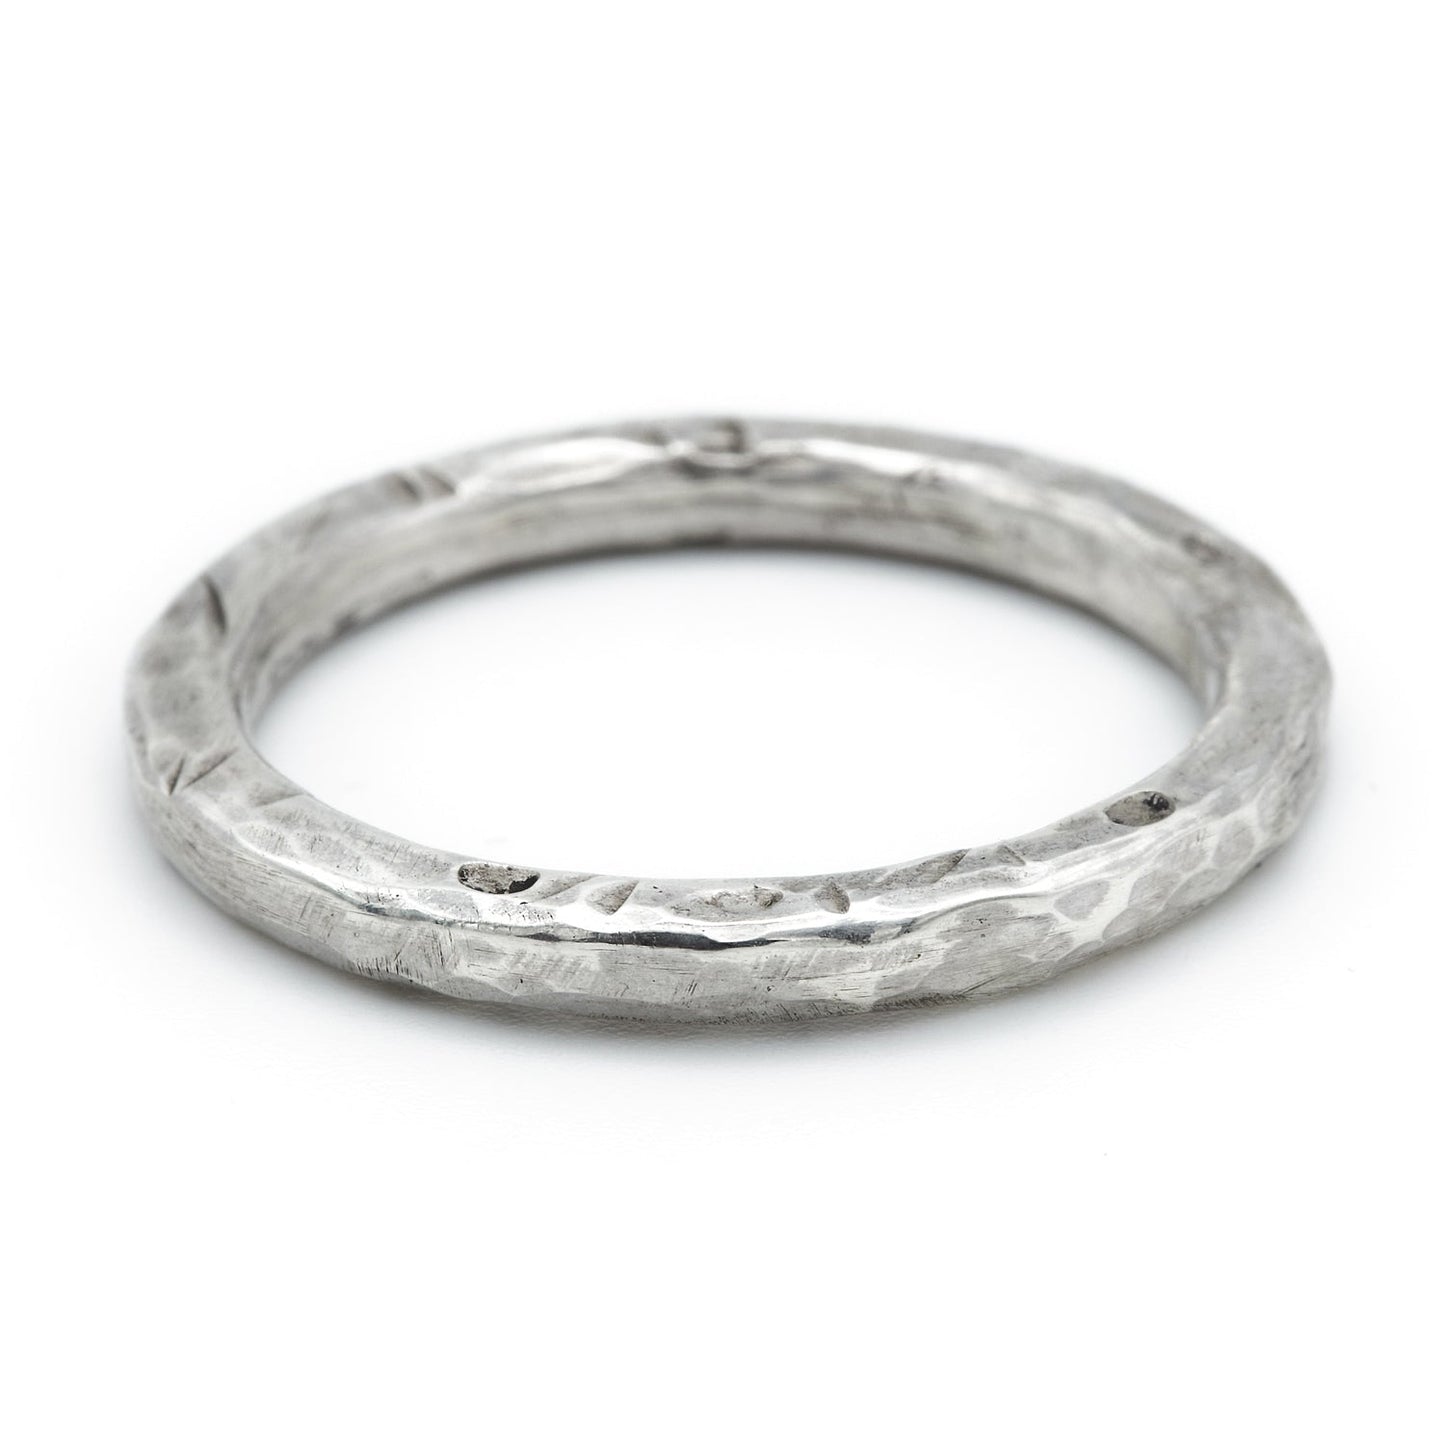 Ring aus 925 Sterling Silber grob geschmiedet für Herren - Männer Silberring